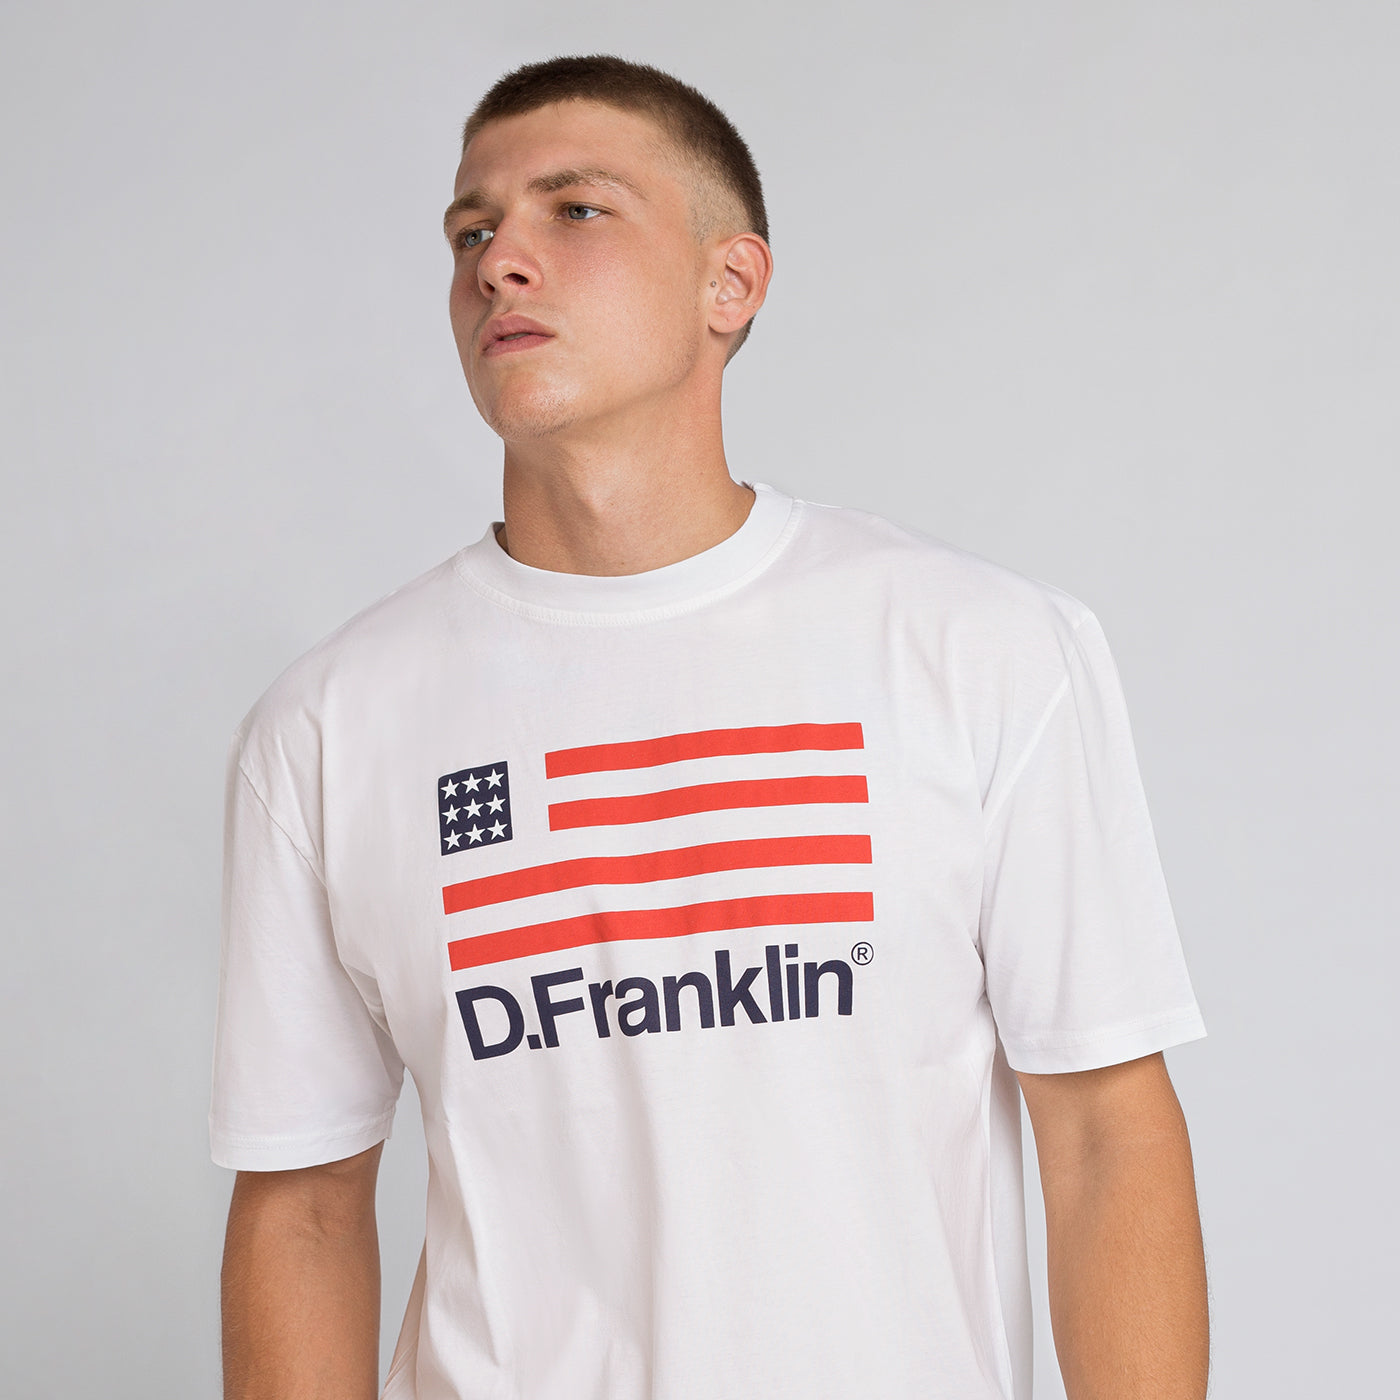 T-Shirt D.Franklin Flag White